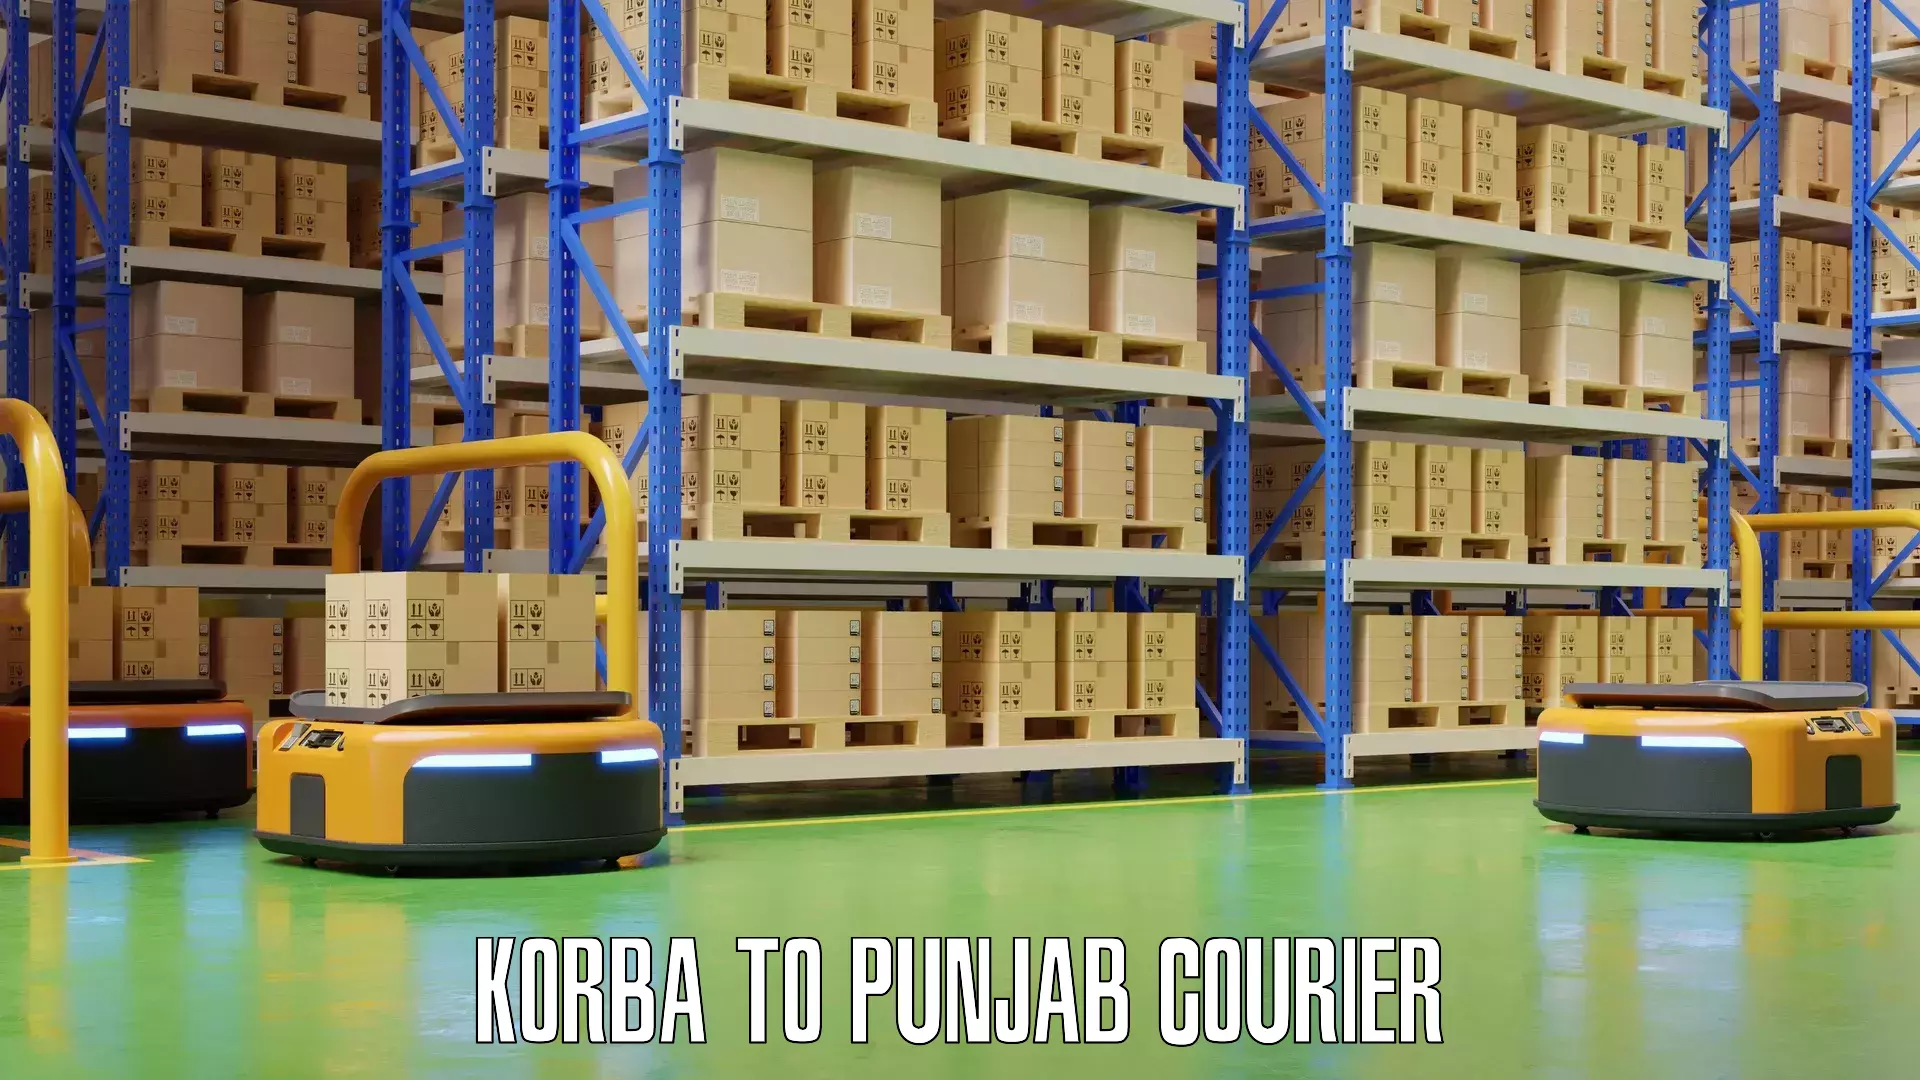 Baggage shipping service Korba to Punjab